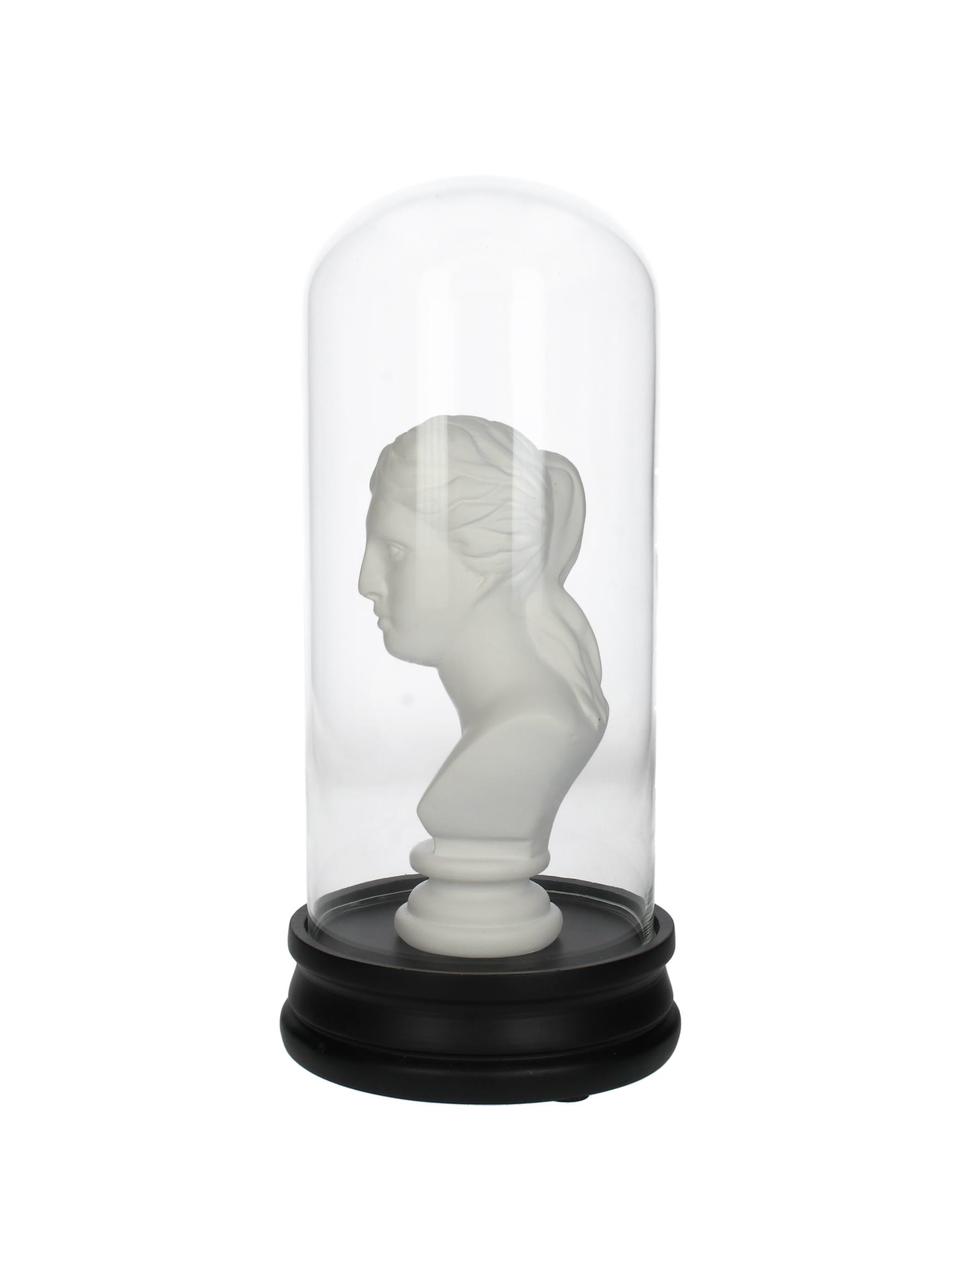 Objet décoratif Lady, Blanc, noir, transparent, Ø 14 cm x haut. 29 cm